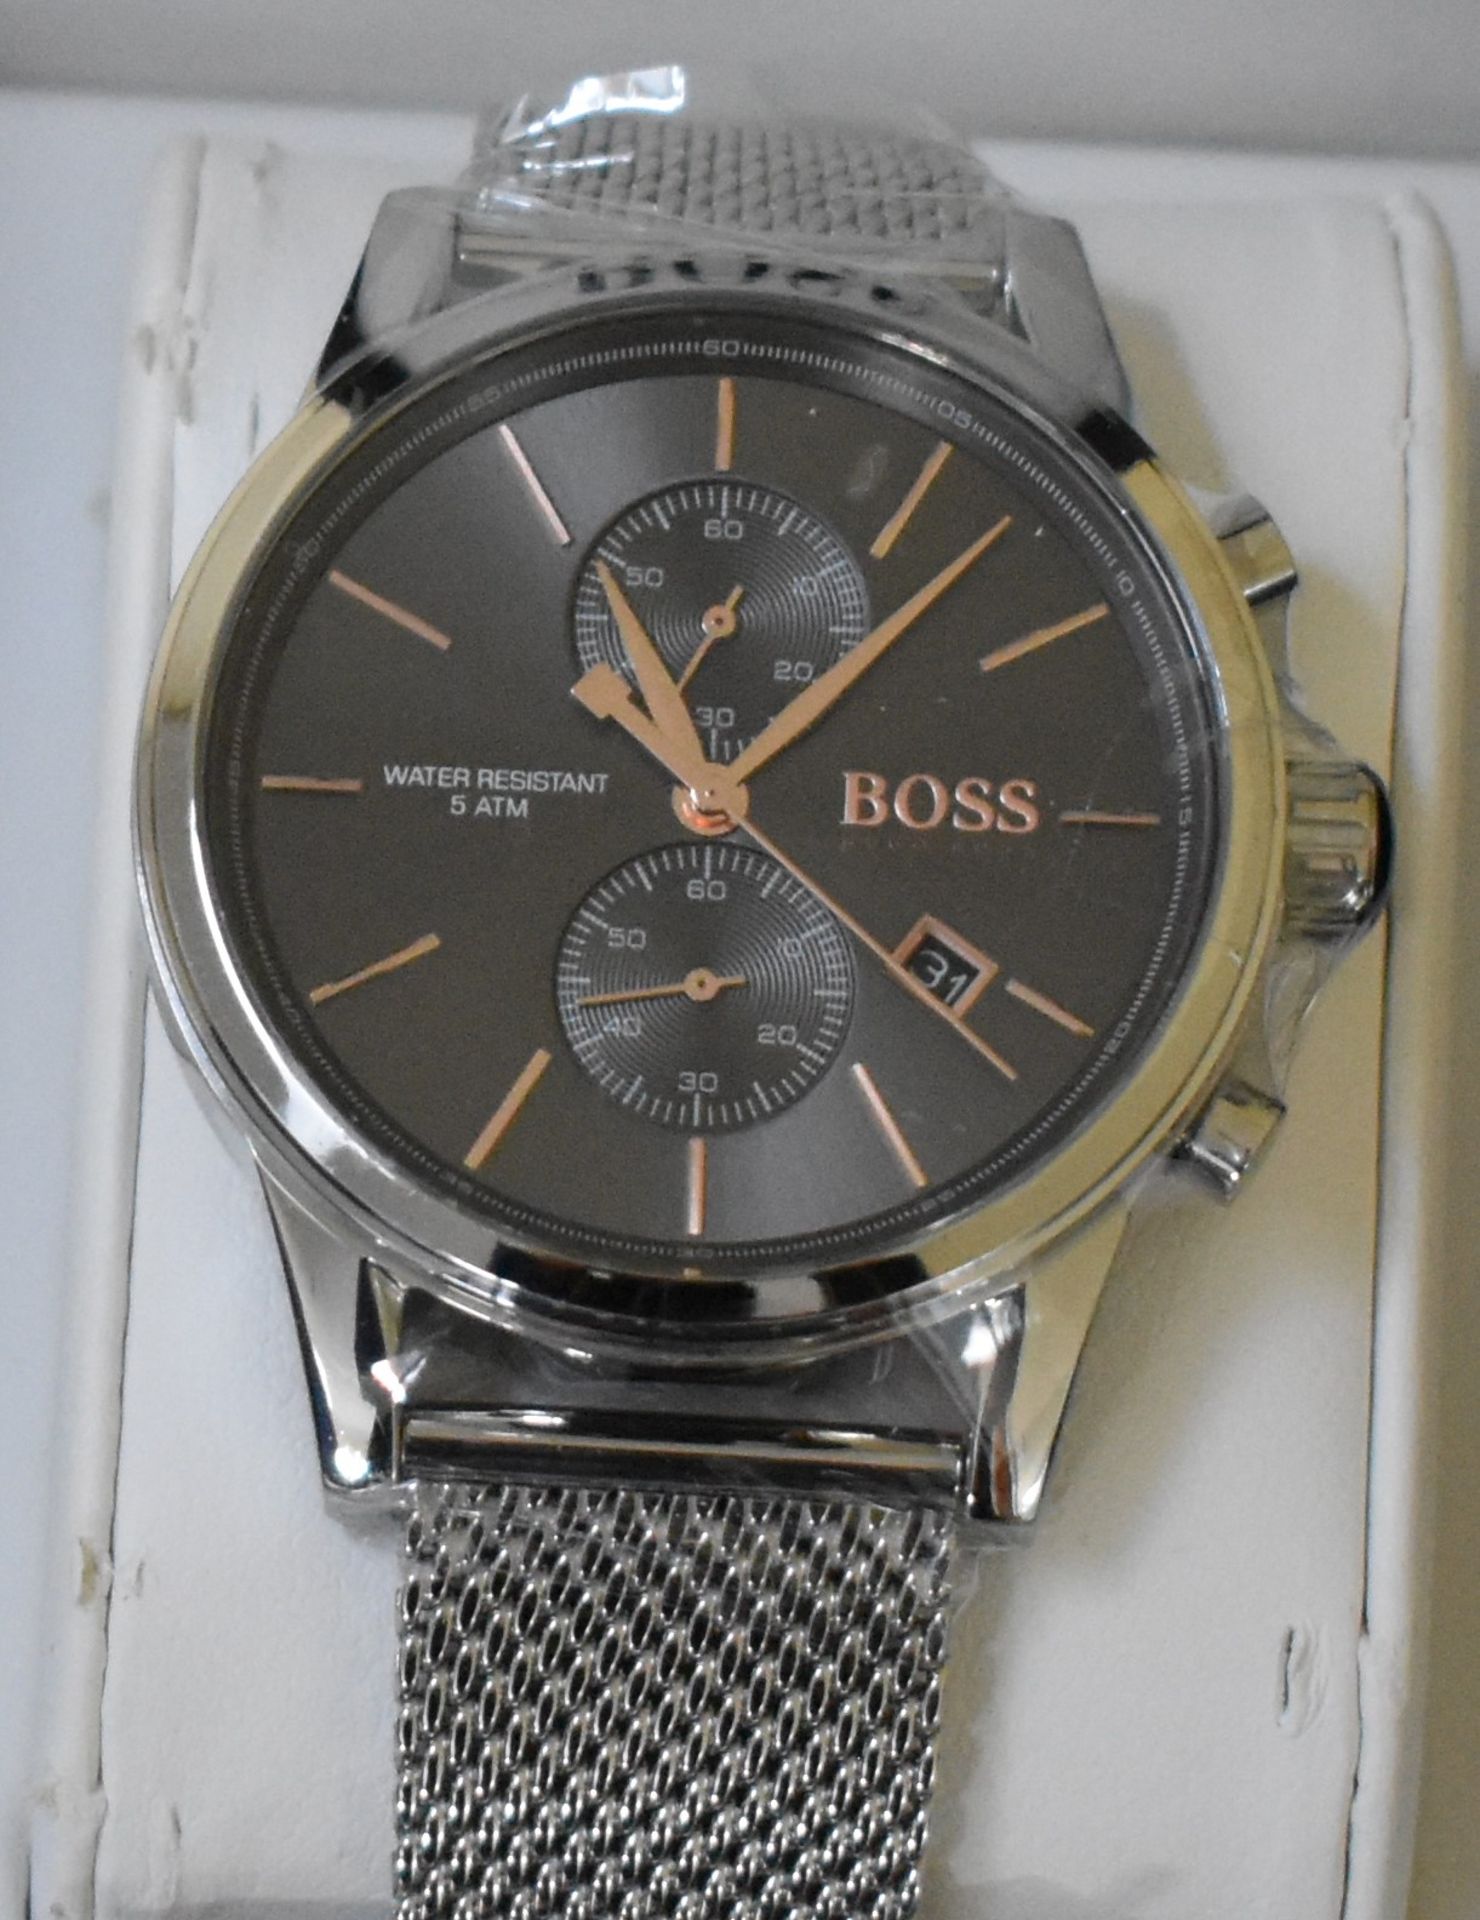 Hugo Boss Men's Watch HB1513440 - Image 2 of 2